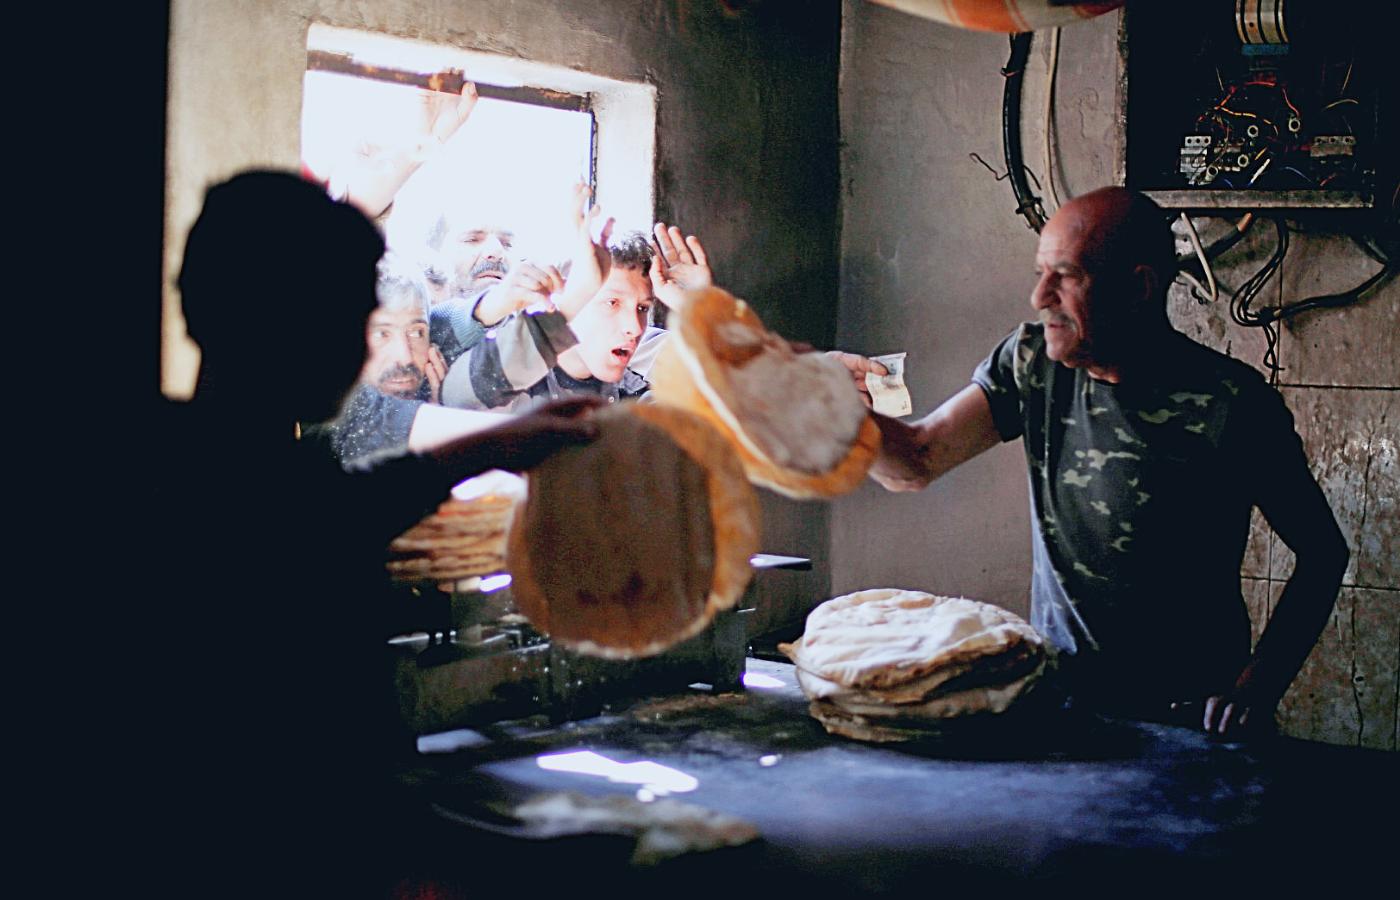 Kolejka po chleb w Aleppo, zdjęcie z 2019 r. Sytuacja od tamtego czasu znacznie się pogorszyła. W kolejce po ten podstawowy produkt trzeba stać nawet kilka godzin.